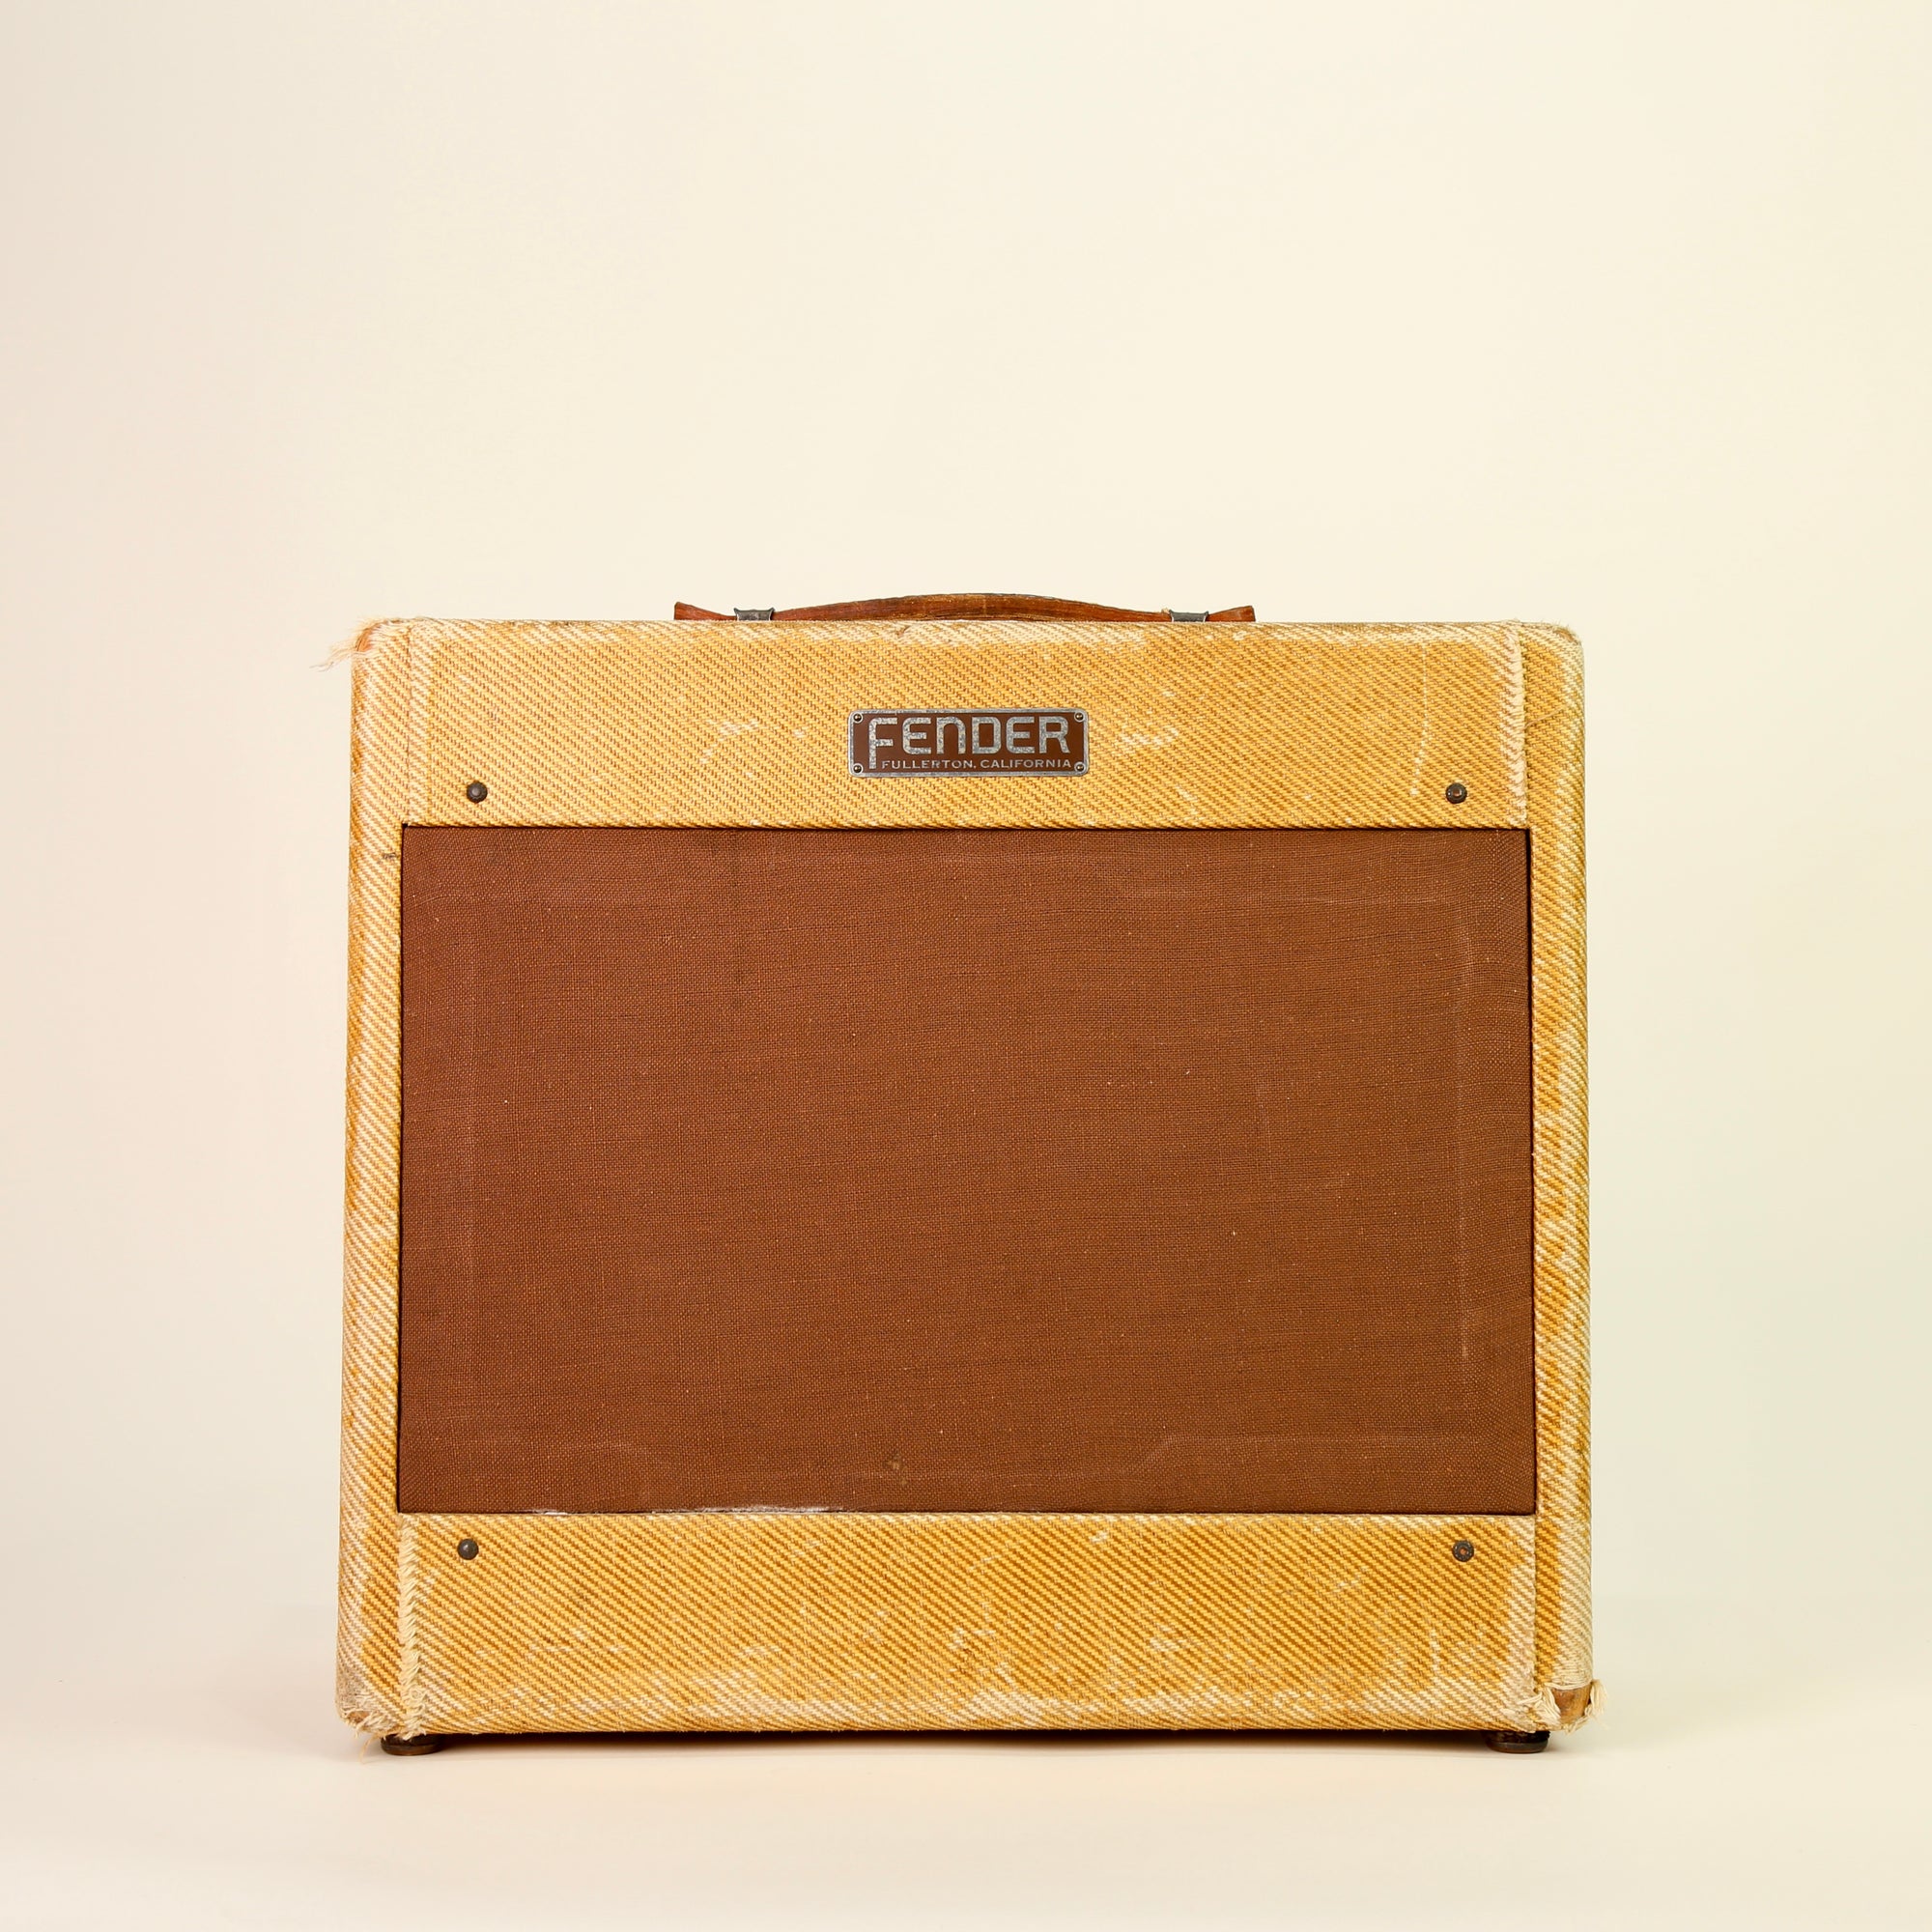 1953 Fender Deluxe Amp